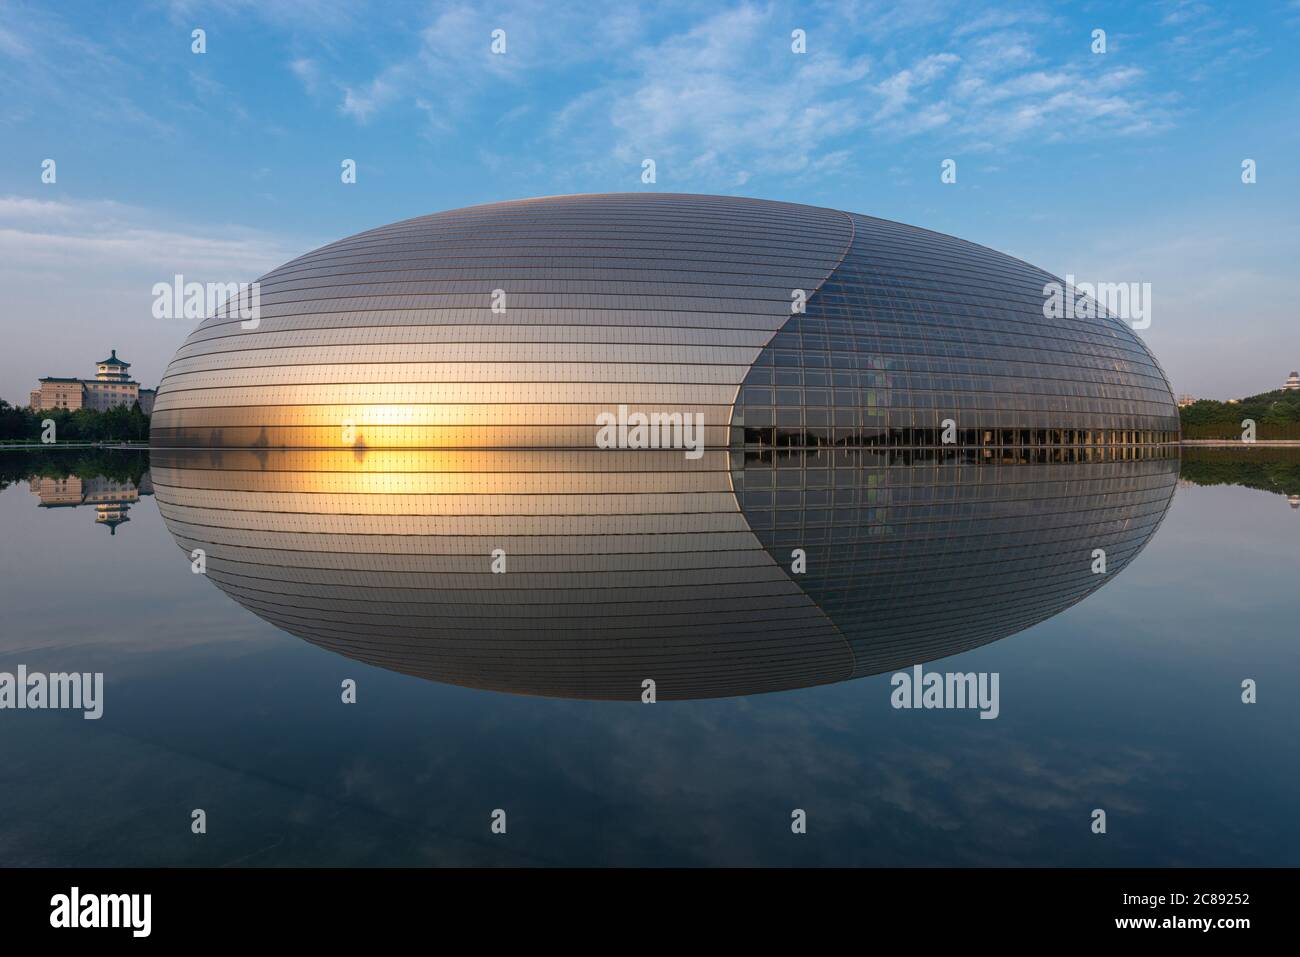 PEKING, CHINA - 24. JUNI 2014: National Center for the Performing Arts. Das futuristische Design sorgte für Kontroversen, als das Theater in 2 fertiggestellt wurde Stockfoto